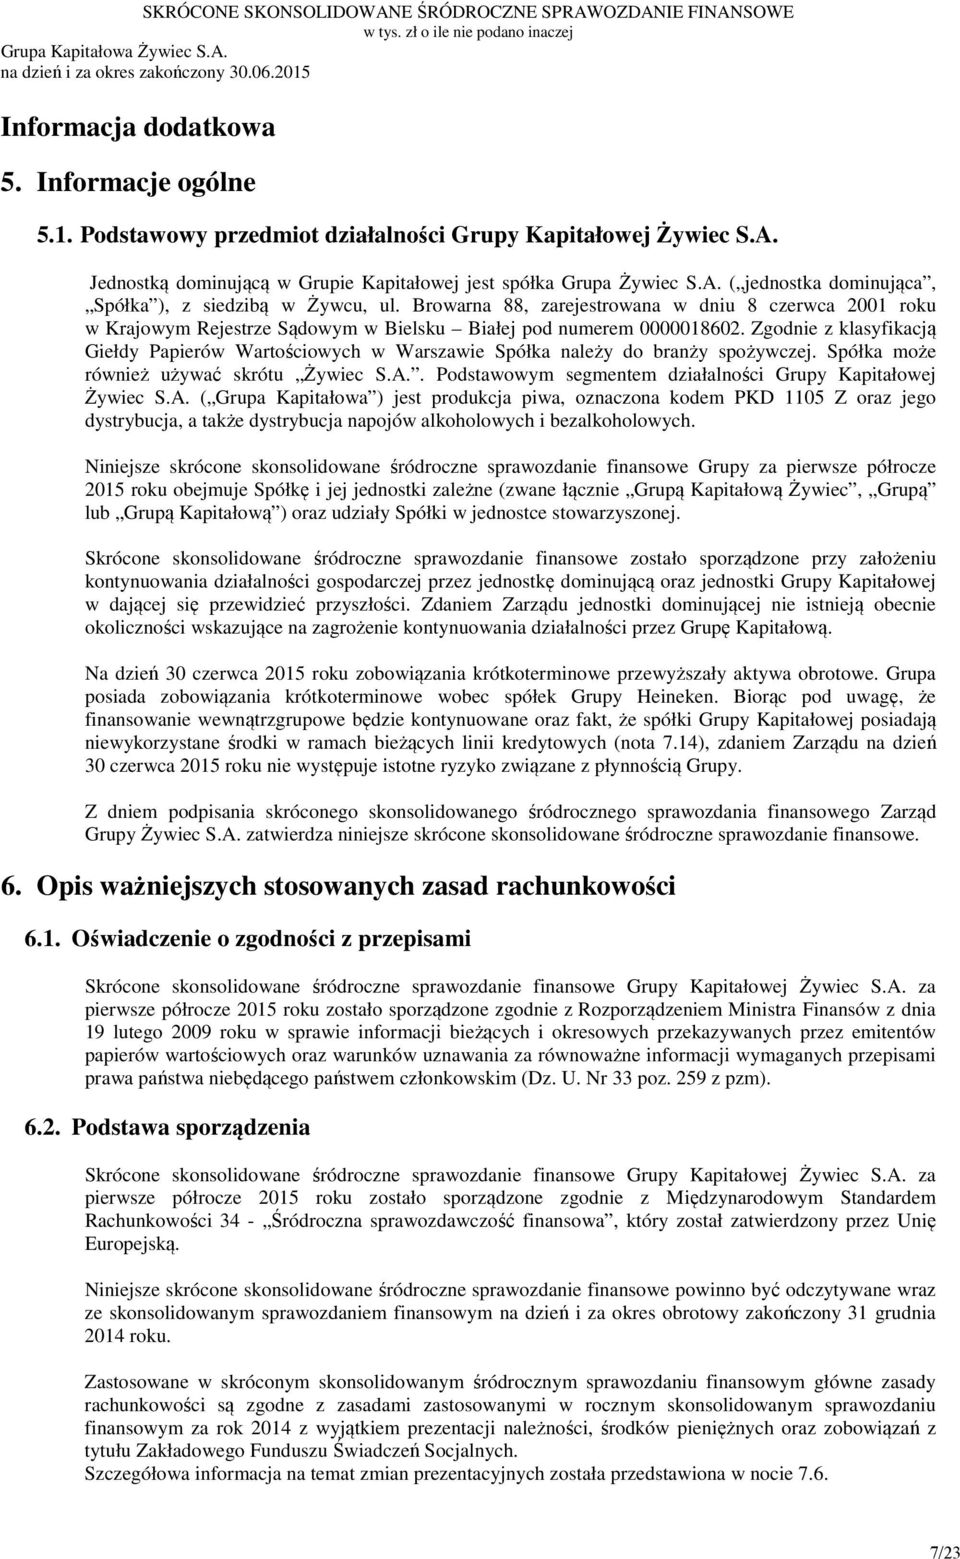 Zgodnie z klasyfikacją Giełdy Papierów Wartościowych w Warszawie Spółka należy do branży spożywczej. Spółka może również używać skrótu Żywiec S.A.